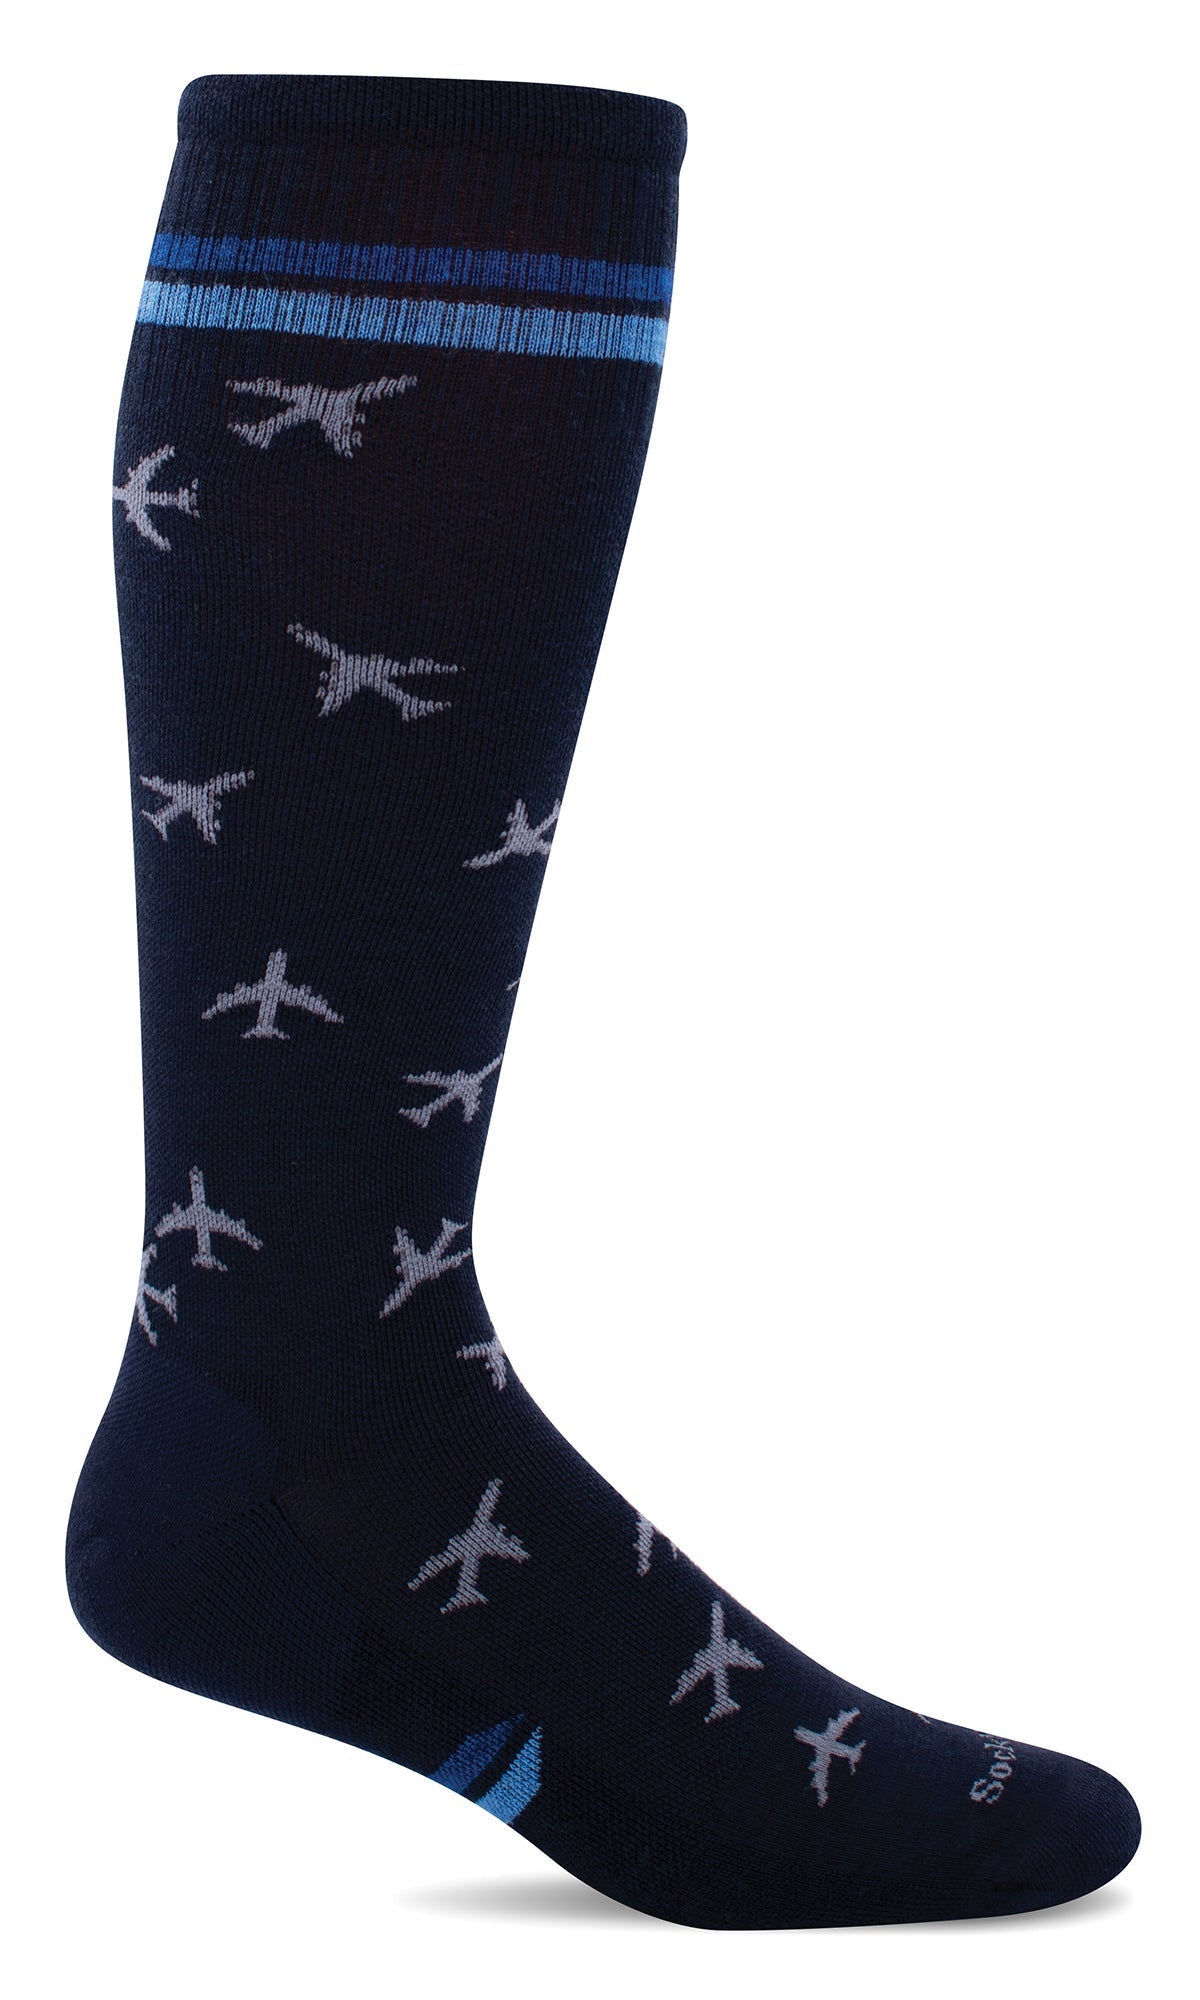 Trtl Flight Compression Socks